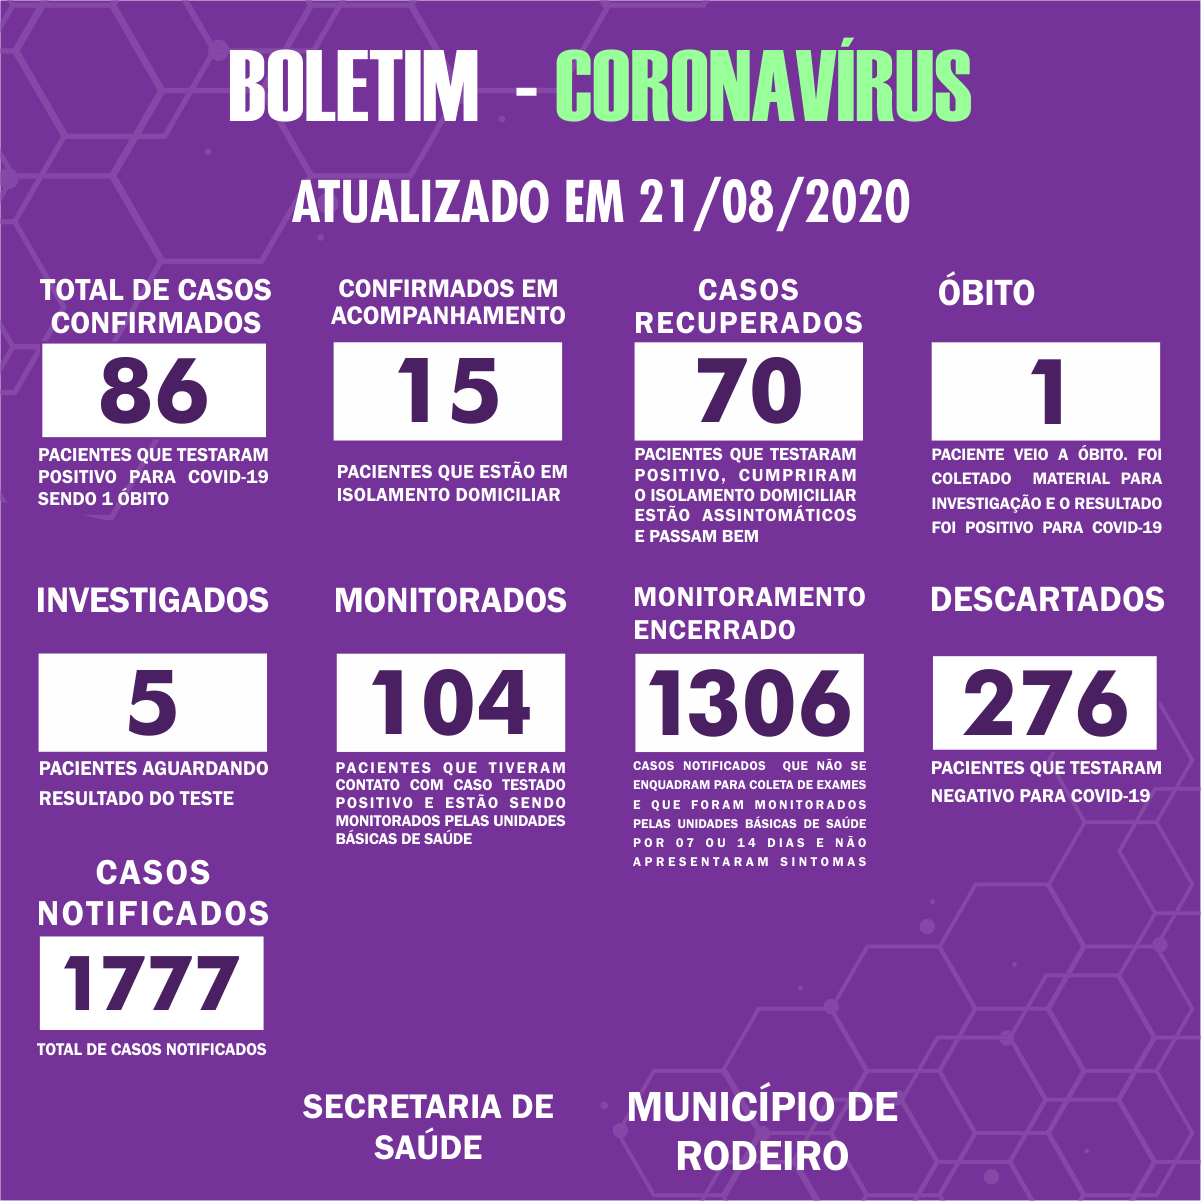 Boletim Epidemiológico do Município de Rodeiro sobre coronavírus, atualizado em 21/08/2020